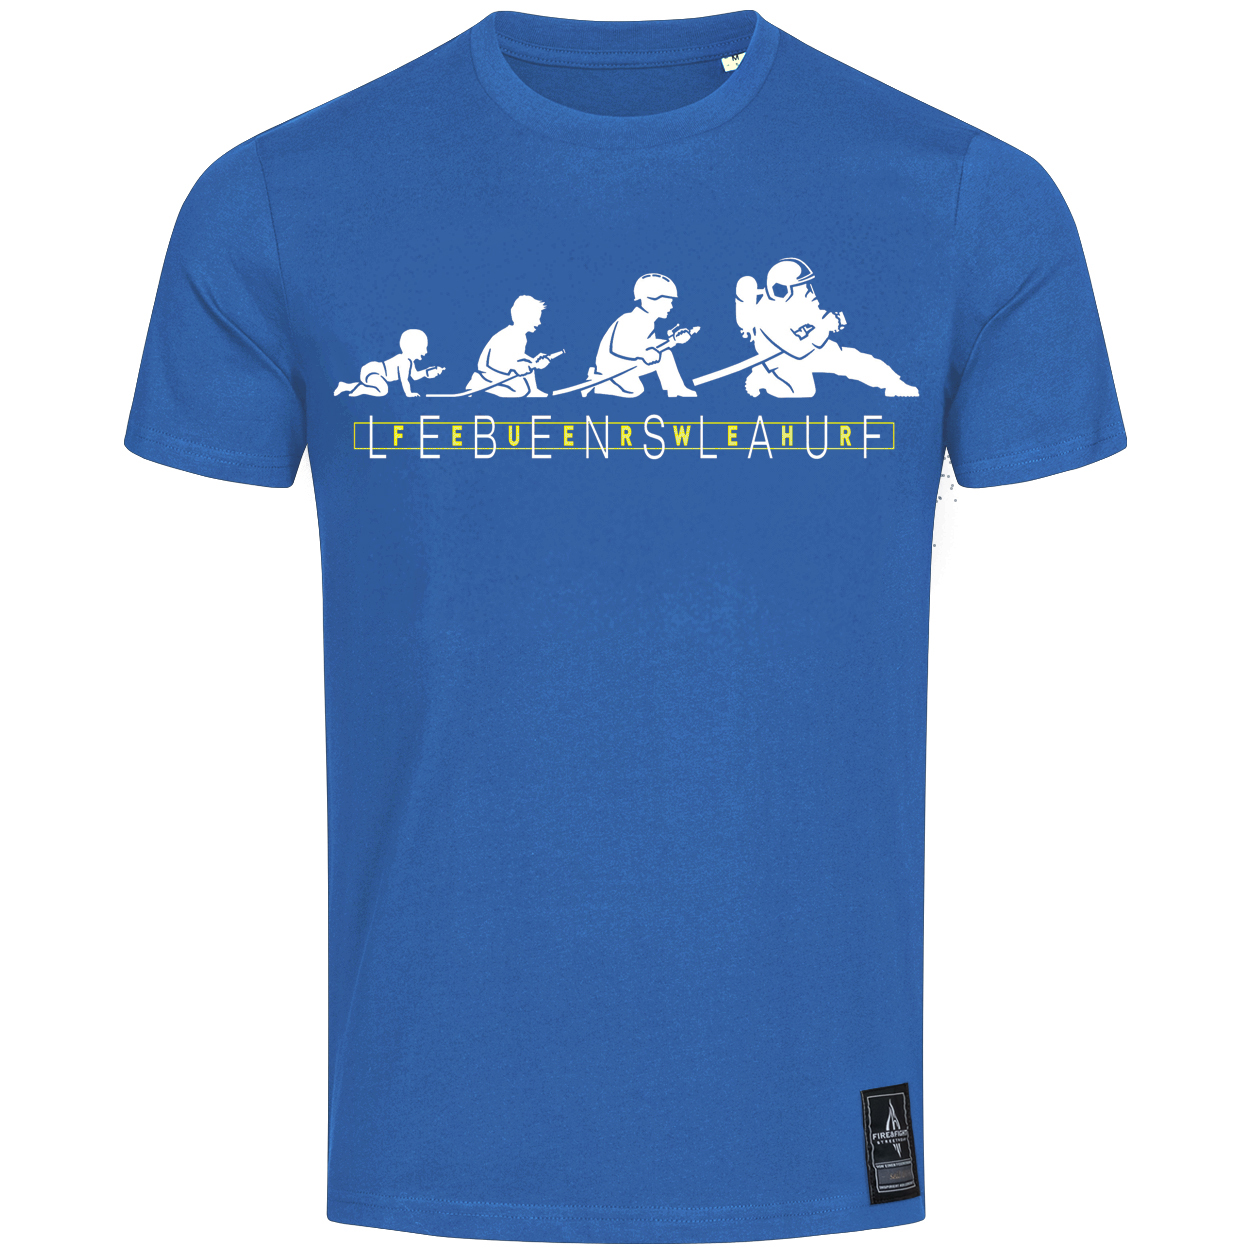 Feuerwehr Lebenslauf - Design T-Shirt blau